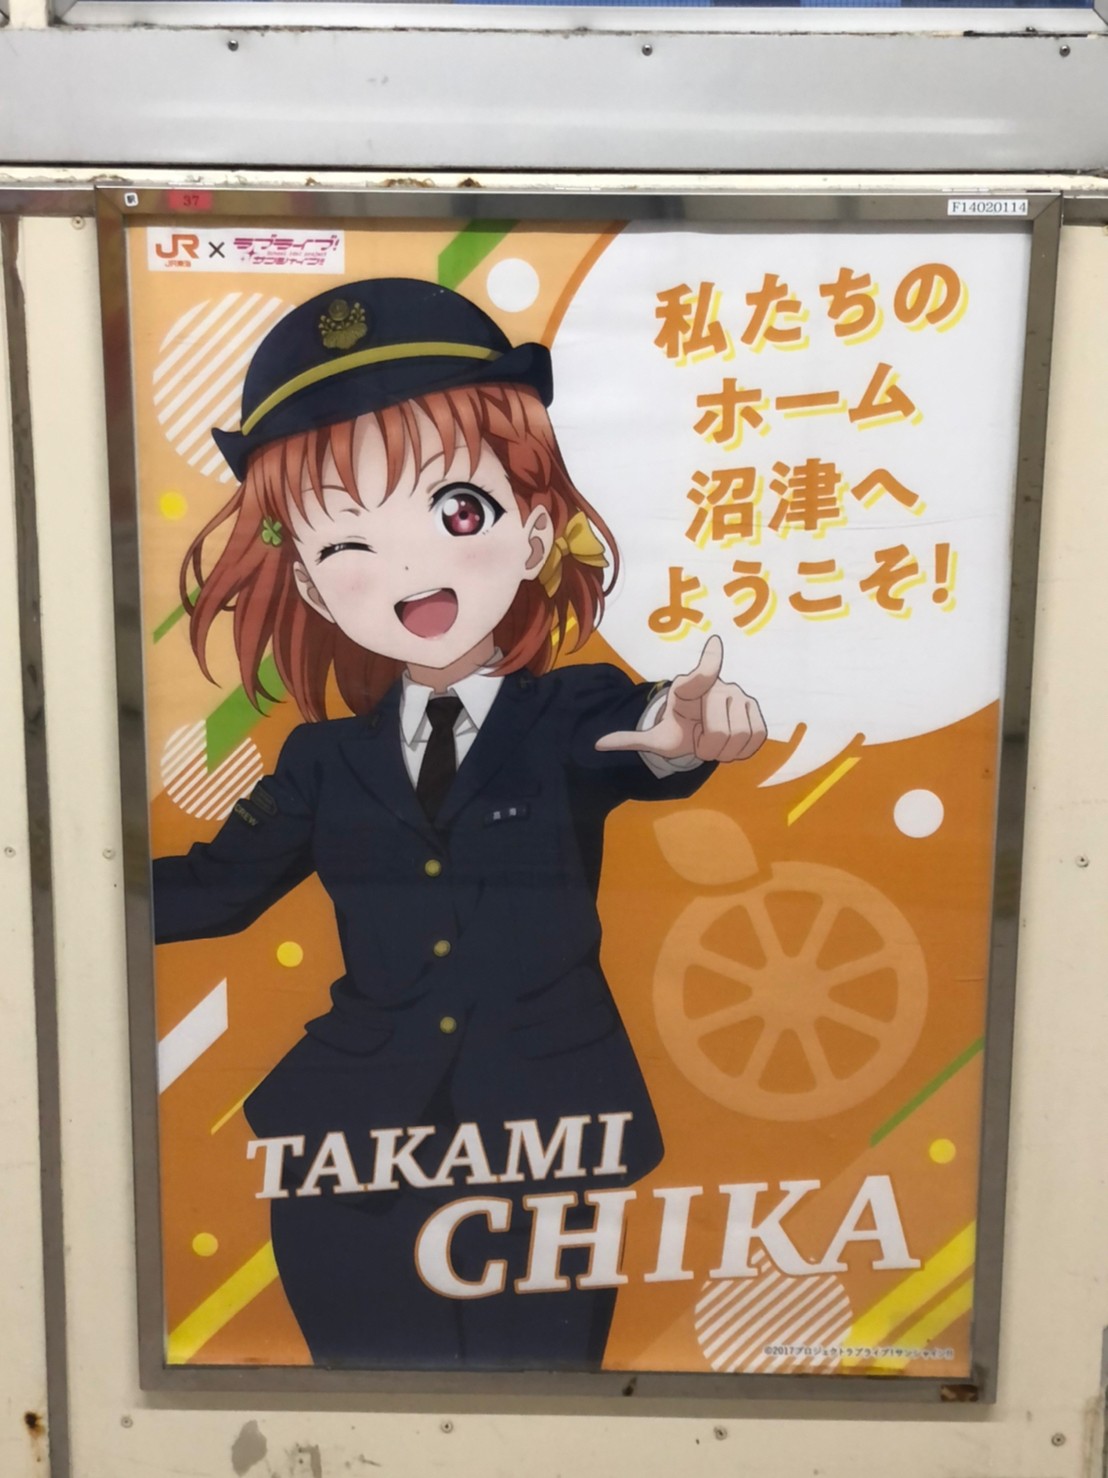 沼津駅構内に掲示された高海千歌のポスター